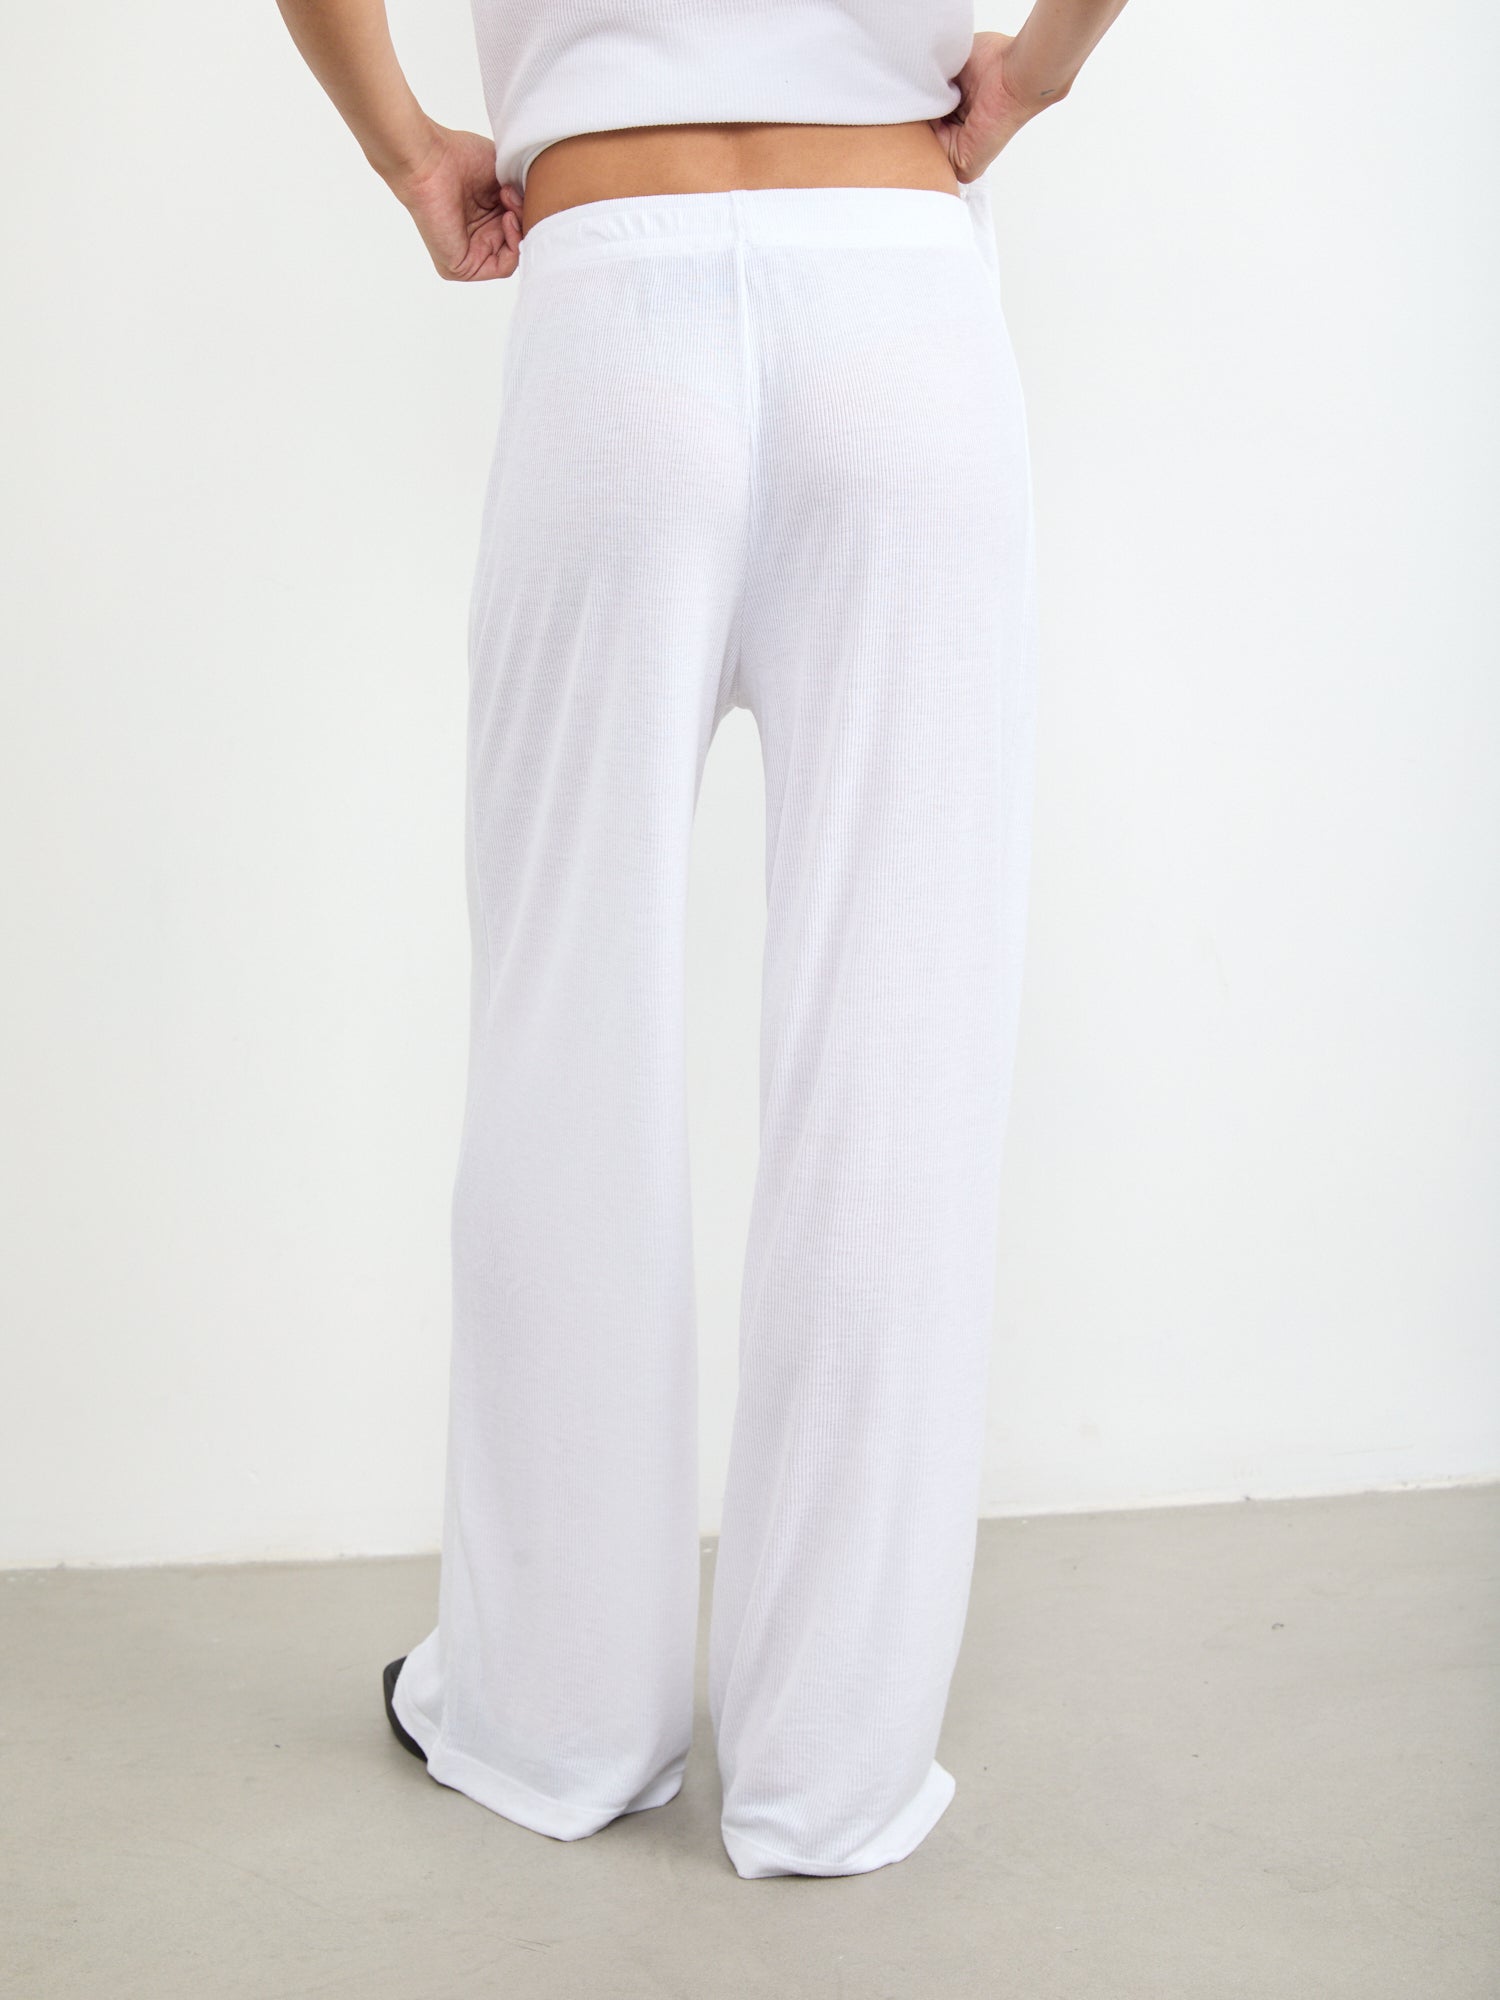 מכנסיים רחבים בטקסטורת ריב- Style River|סטייל ריבר